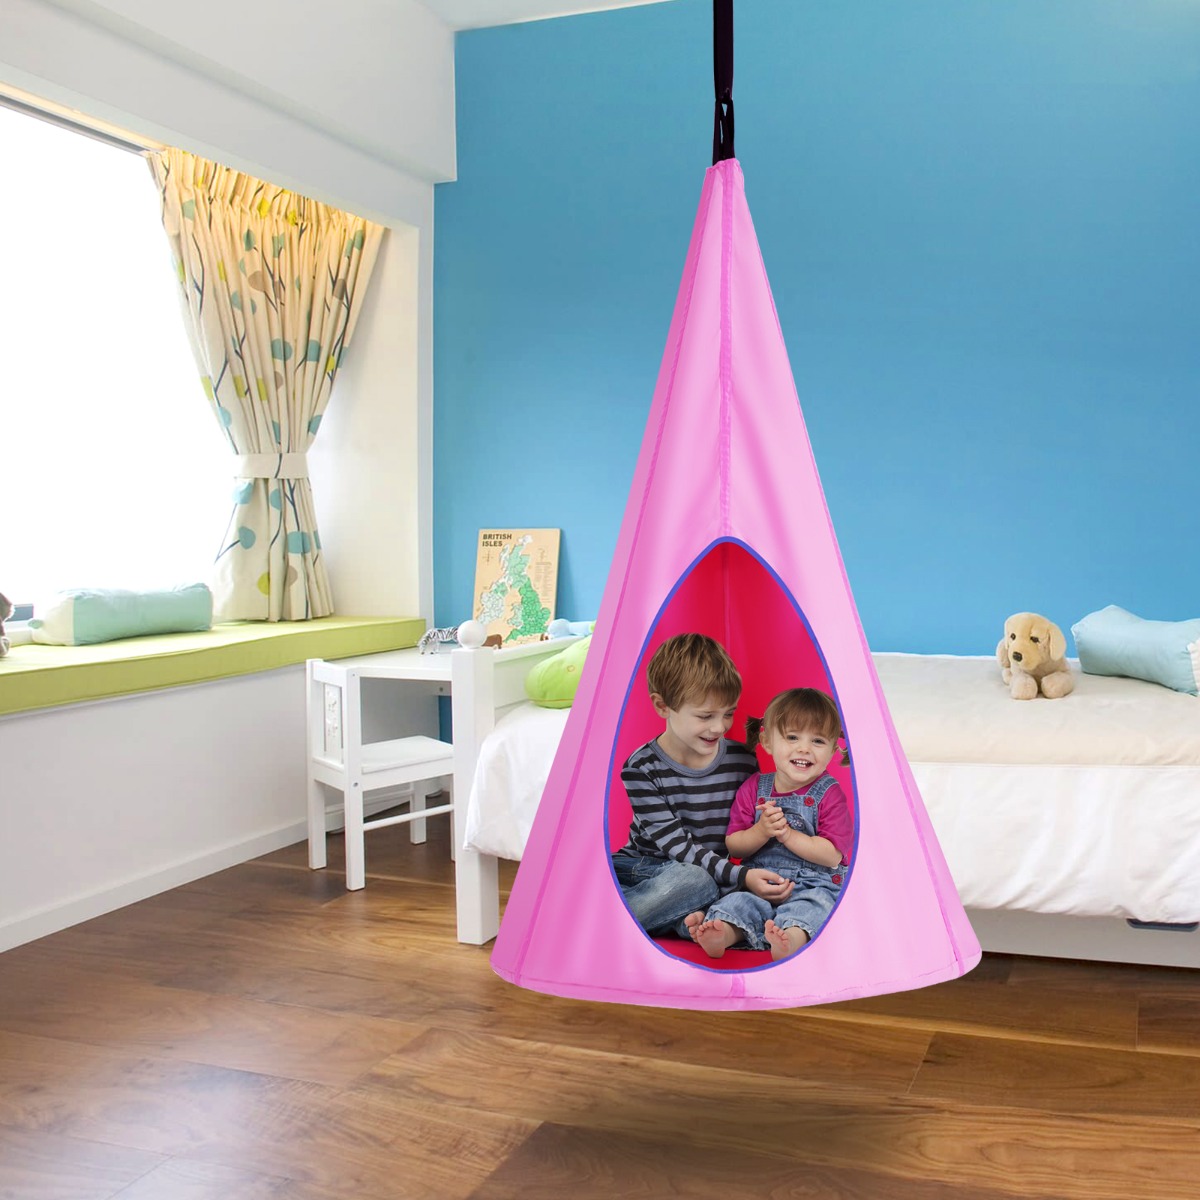 Costway Tenda ad albero per bambini per interno esterno, Altalena tenda staccabile con 2 finestre peep corda regolabile Rosa